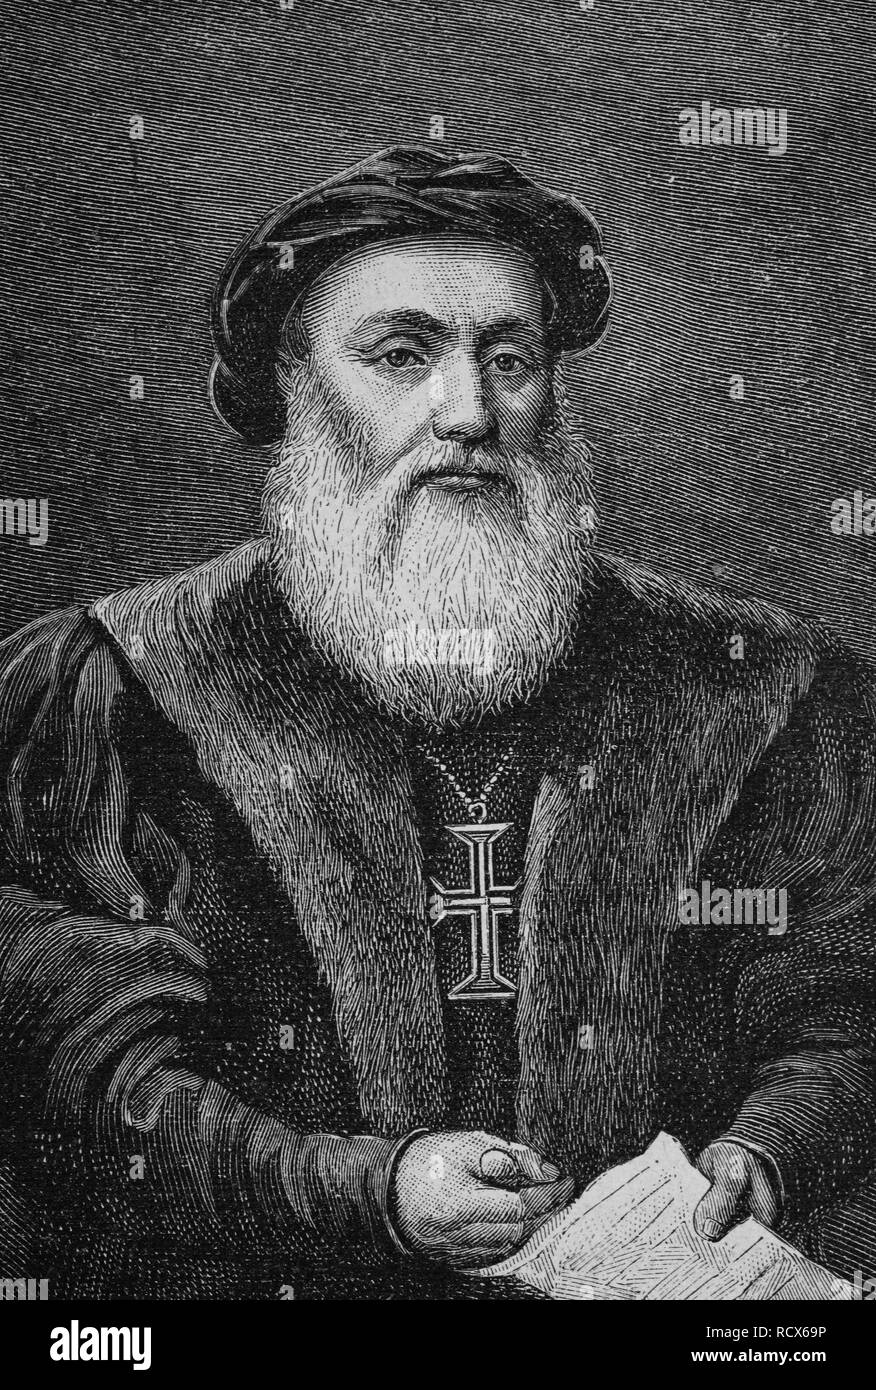 Dom Vasco da Gama, comte de Vidigueira, 1469 - 1524, un navigateur et explorateur portugais de la route des Indes Banque D'Images